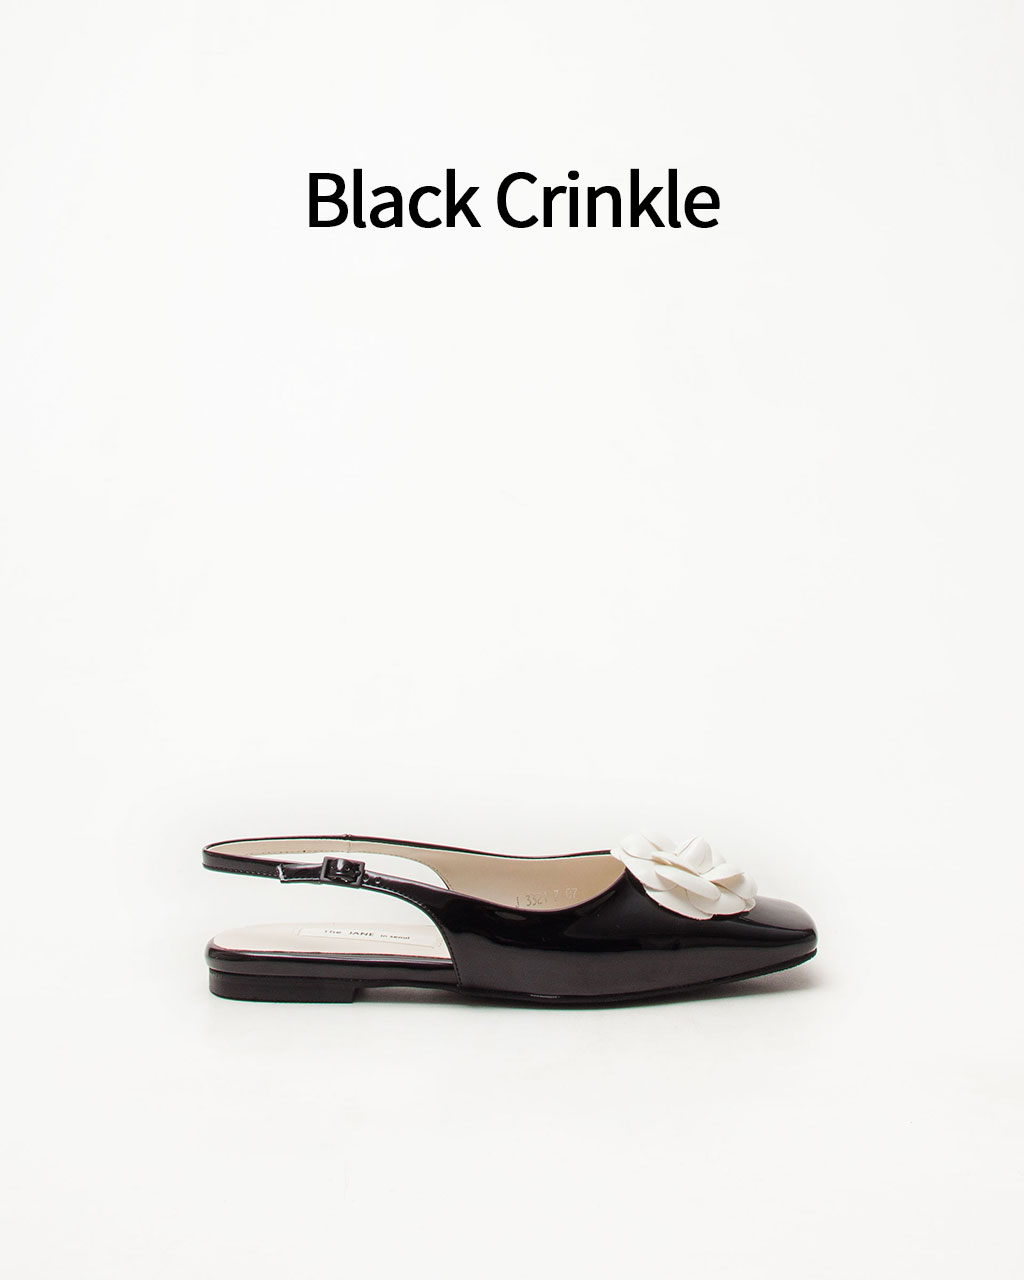 Ariel-21 - Black Crinkle( ũŬ)